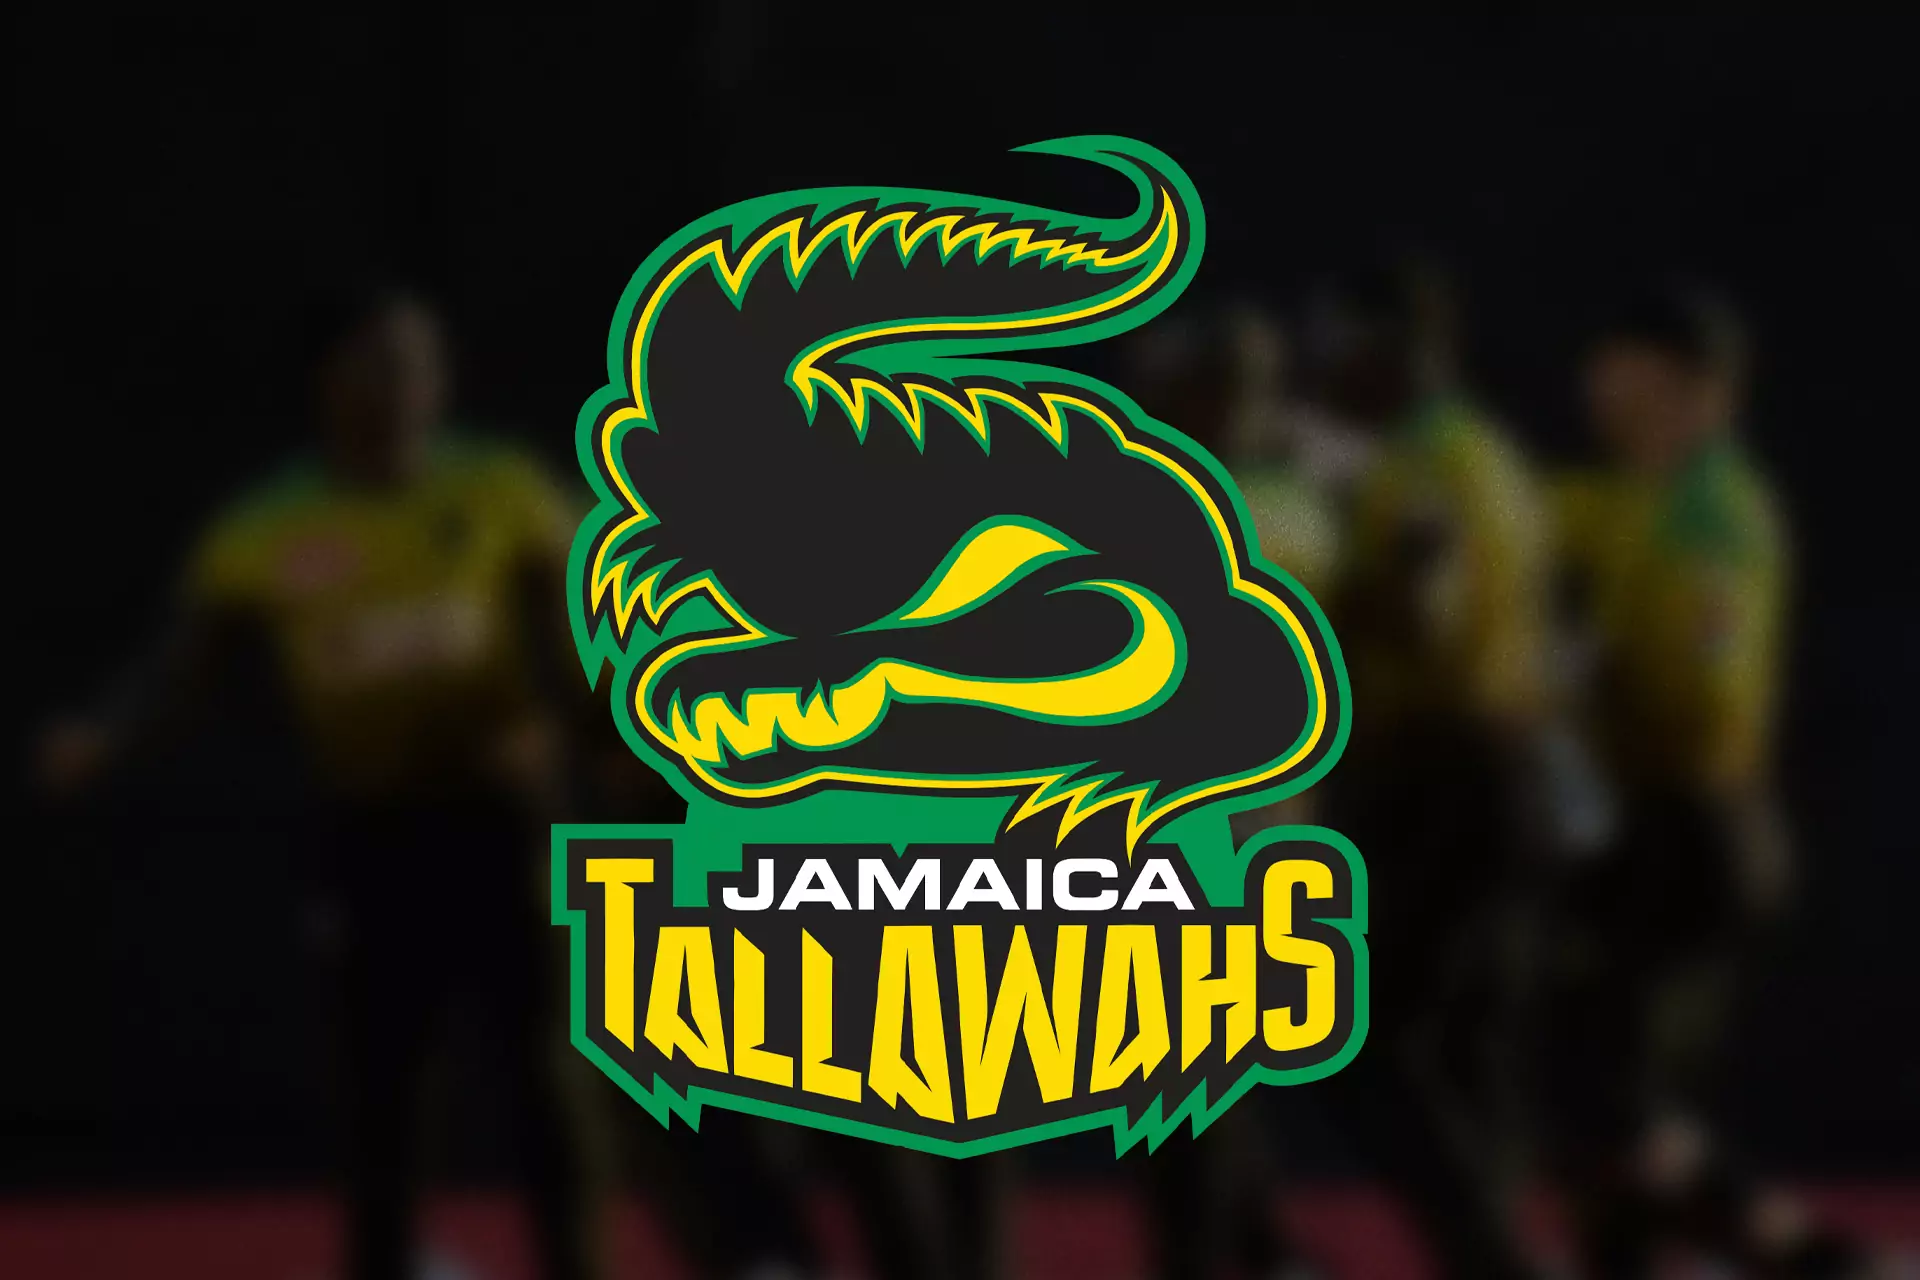 जमैका तल्लावा टीम कैरेबियन प्रीमियर लीग में जमैका का प्रतिनिधित्व करती है।